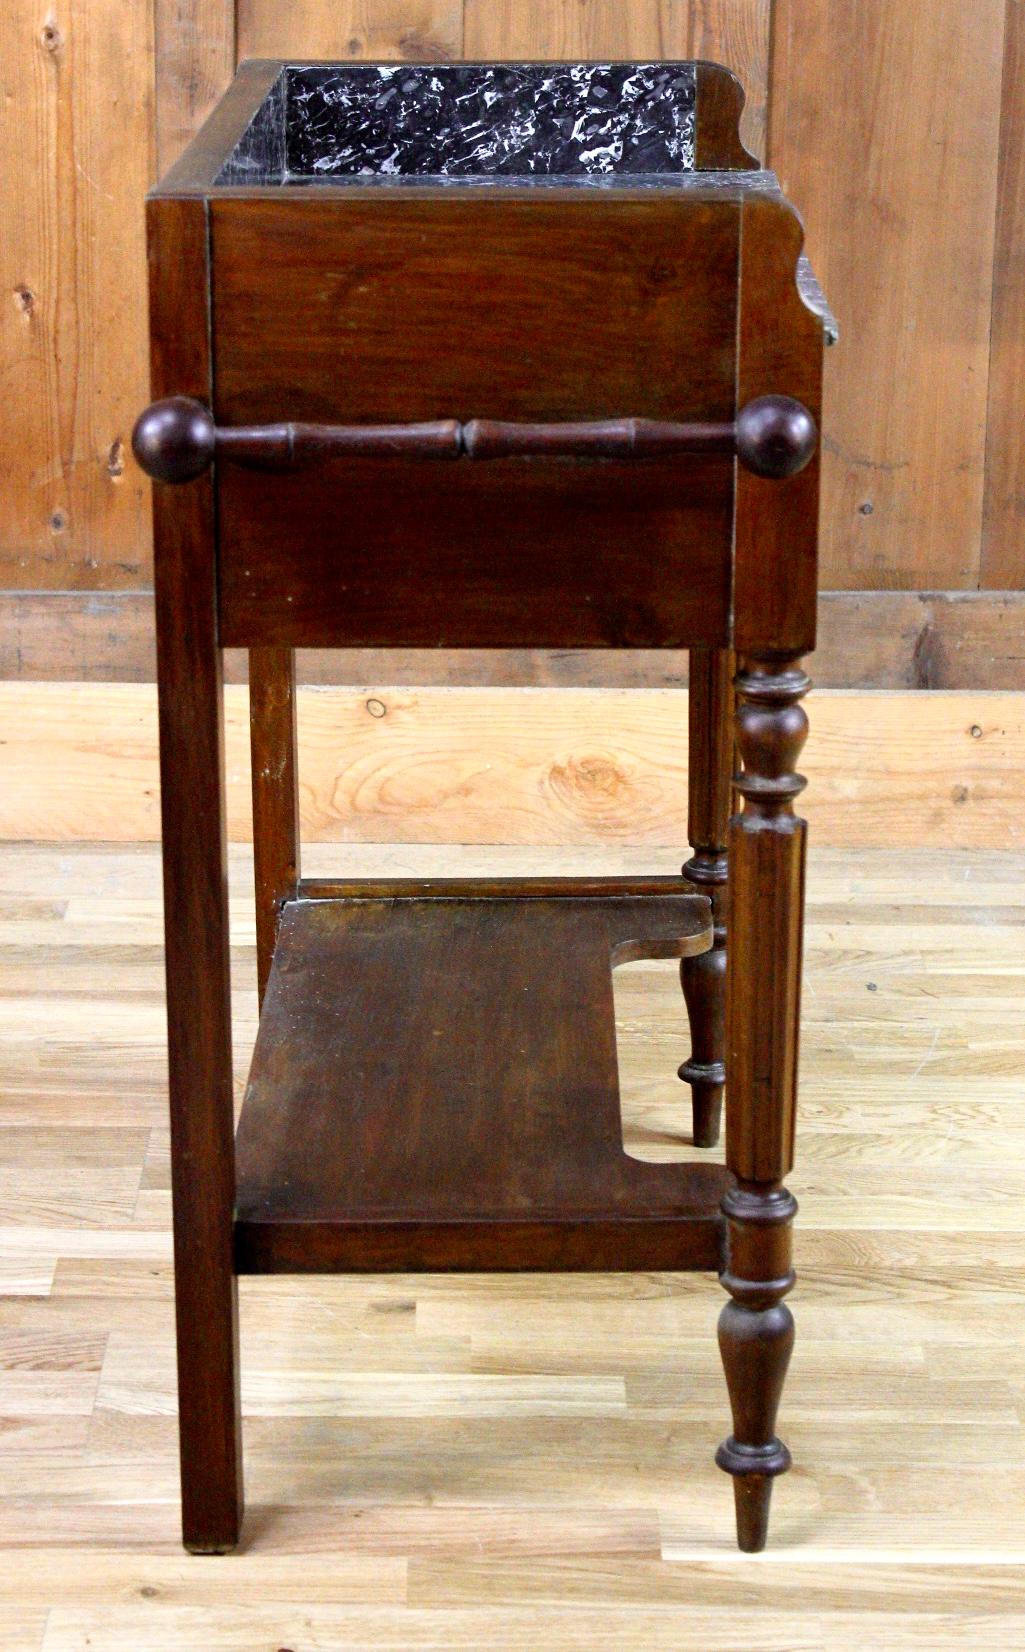 Schöne Kommode aus Holz und schwarzem Marmor aus der Mitte des 19. Jahrhunderts. Dieser Tisch besteht aus vier Beinen, die durch eine Ablage verbunden sind. Der Gürtel ist mit einer Schublade versehen. Die Platte ist aus schwarzem und weißem Marmor.